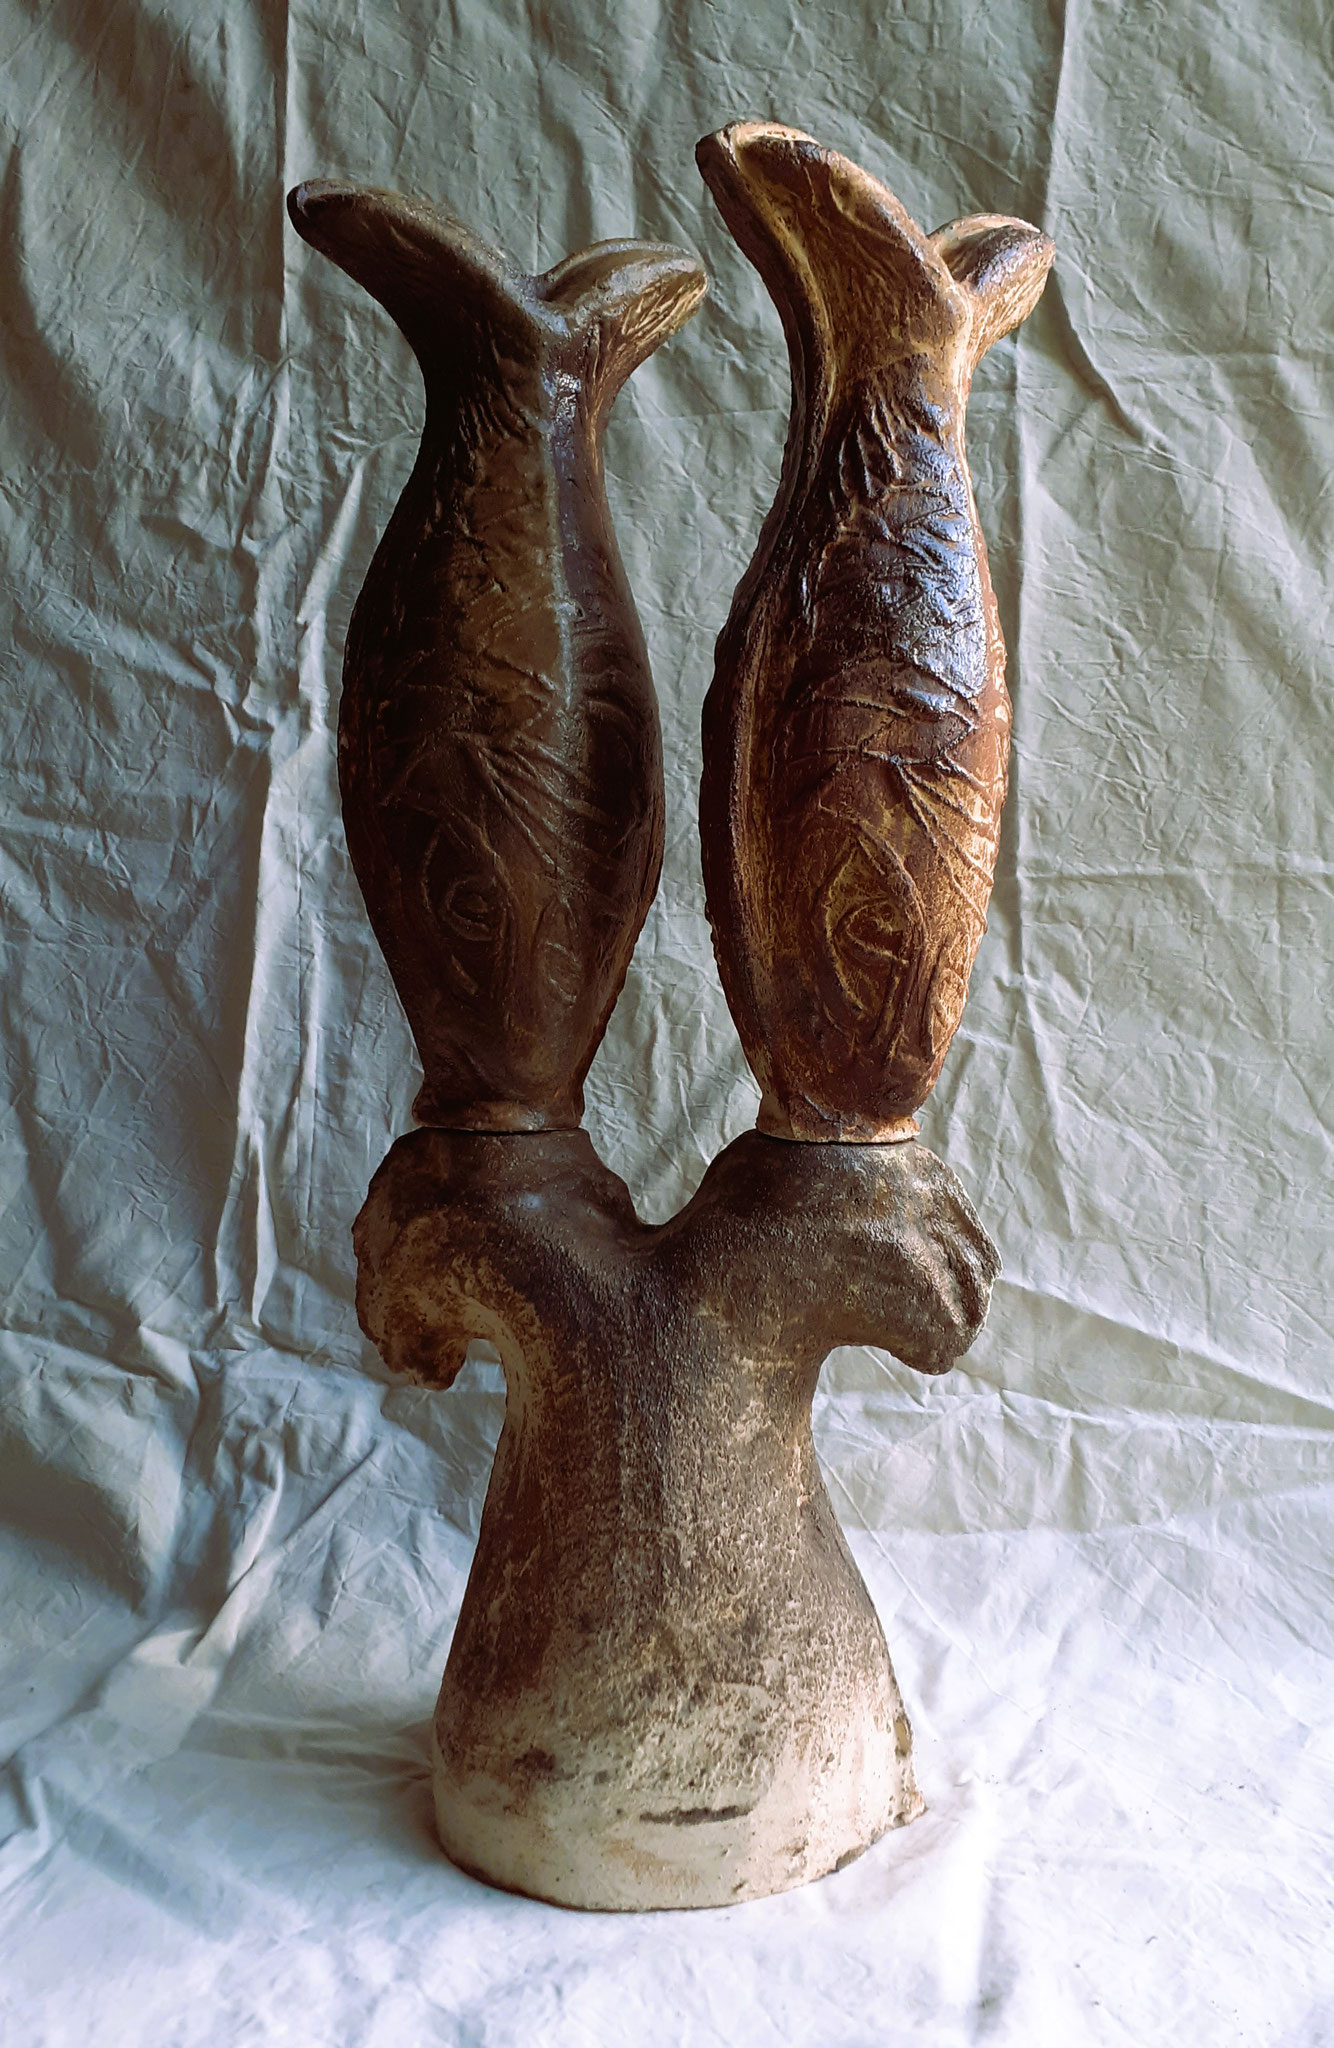 Poissons doubles, grès de St-Amand, cuisson four anagama - 90 X 37 cm